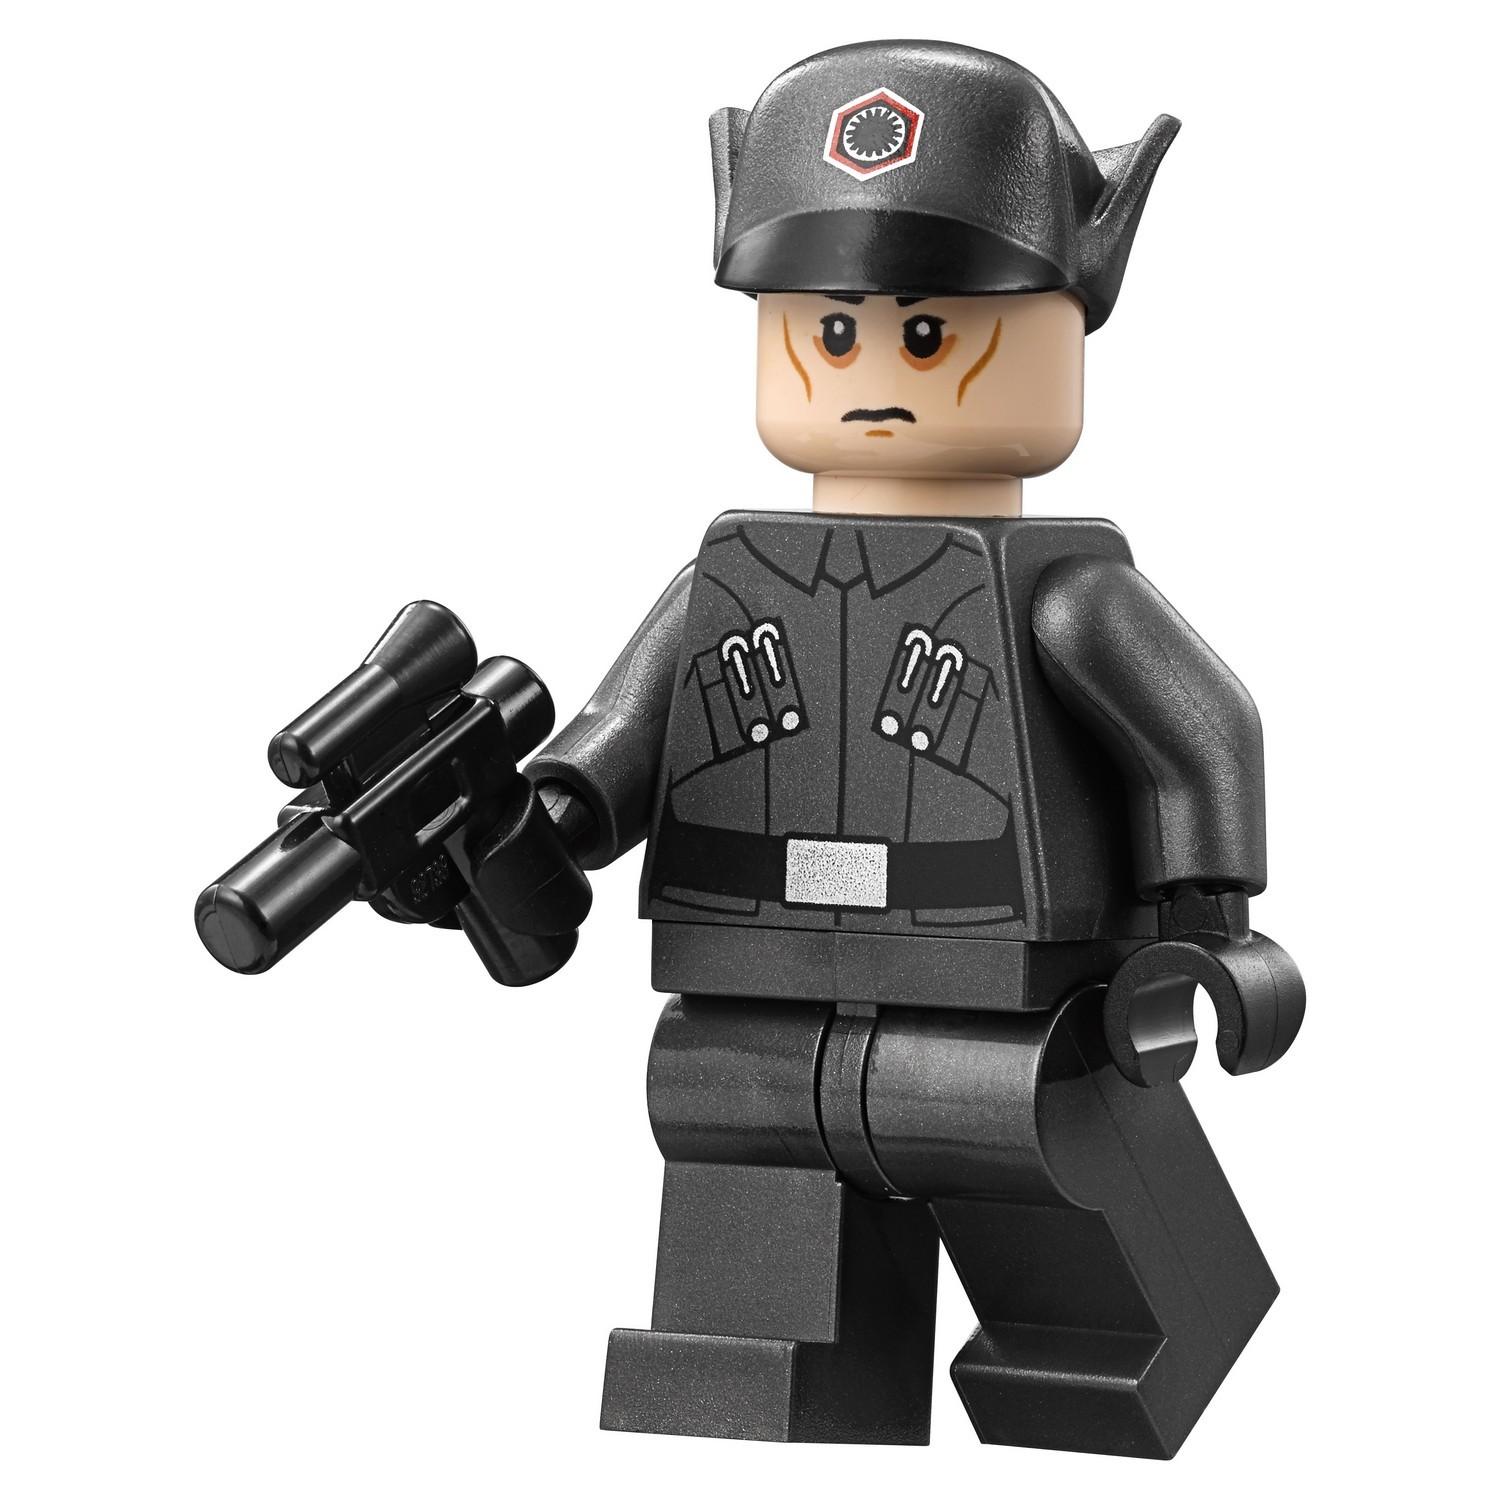 Lego Star Wars 75190 Звездный разрушитель первого ордена